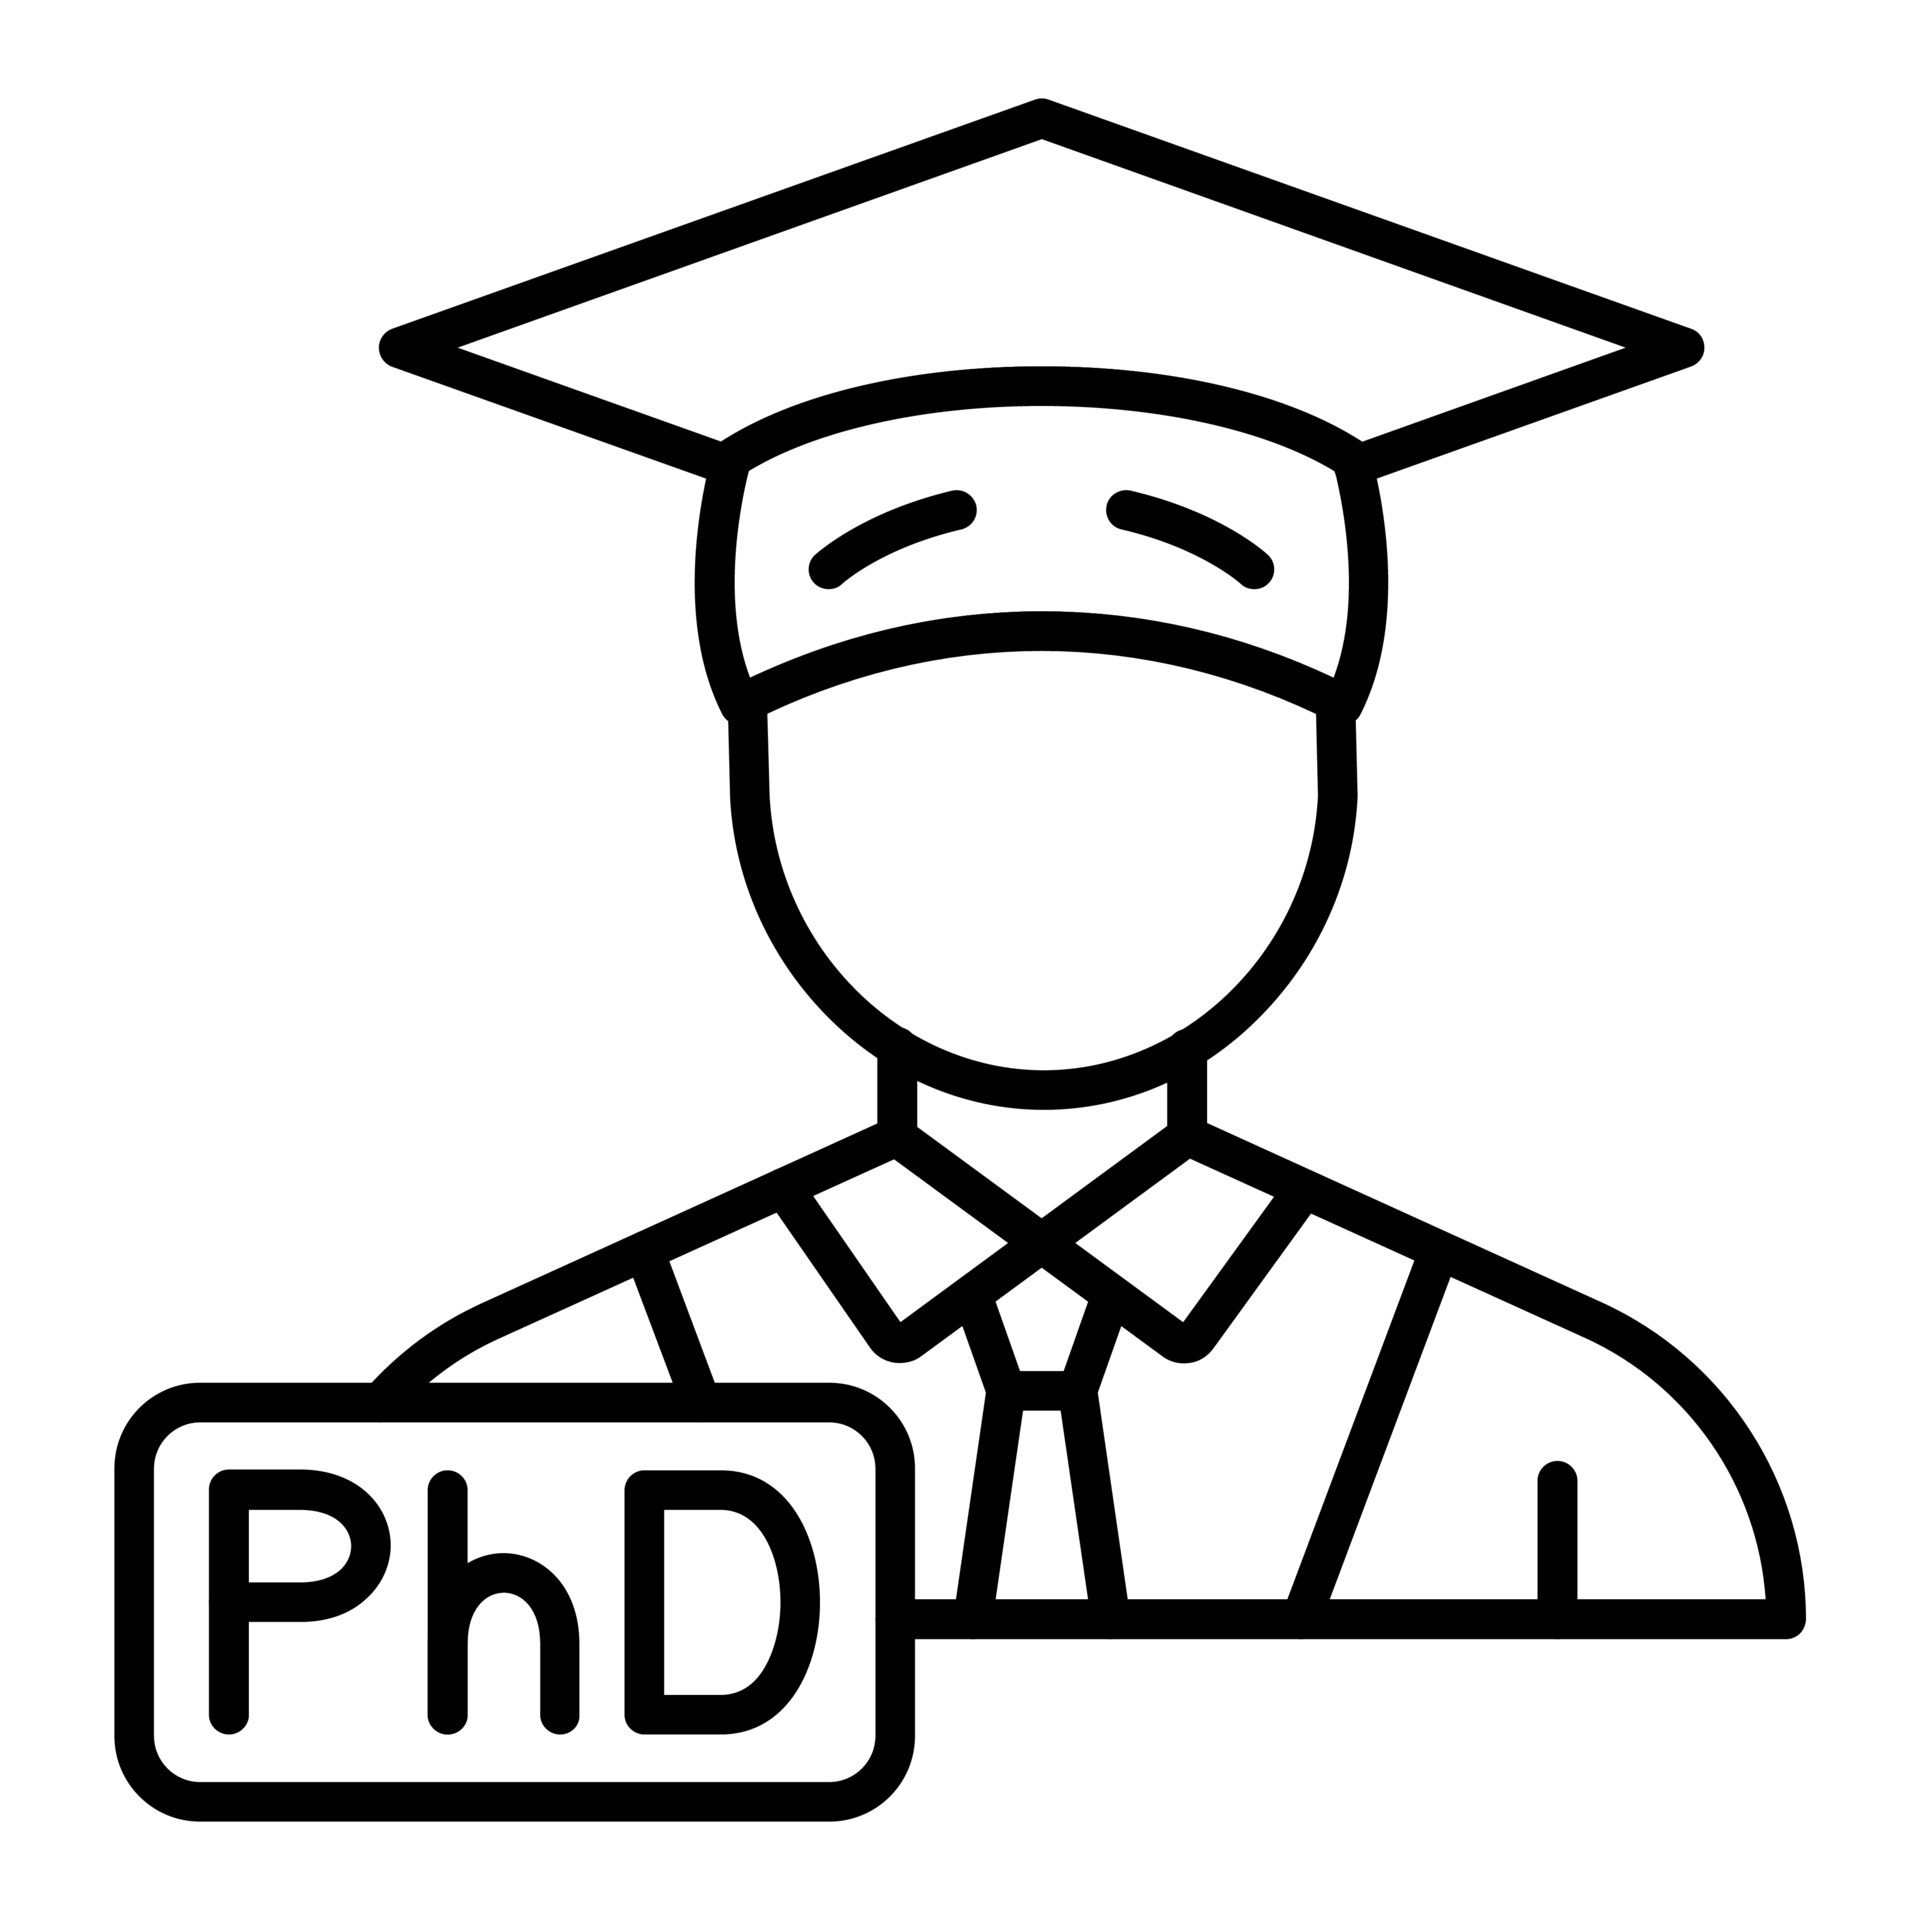 phd degree symbol